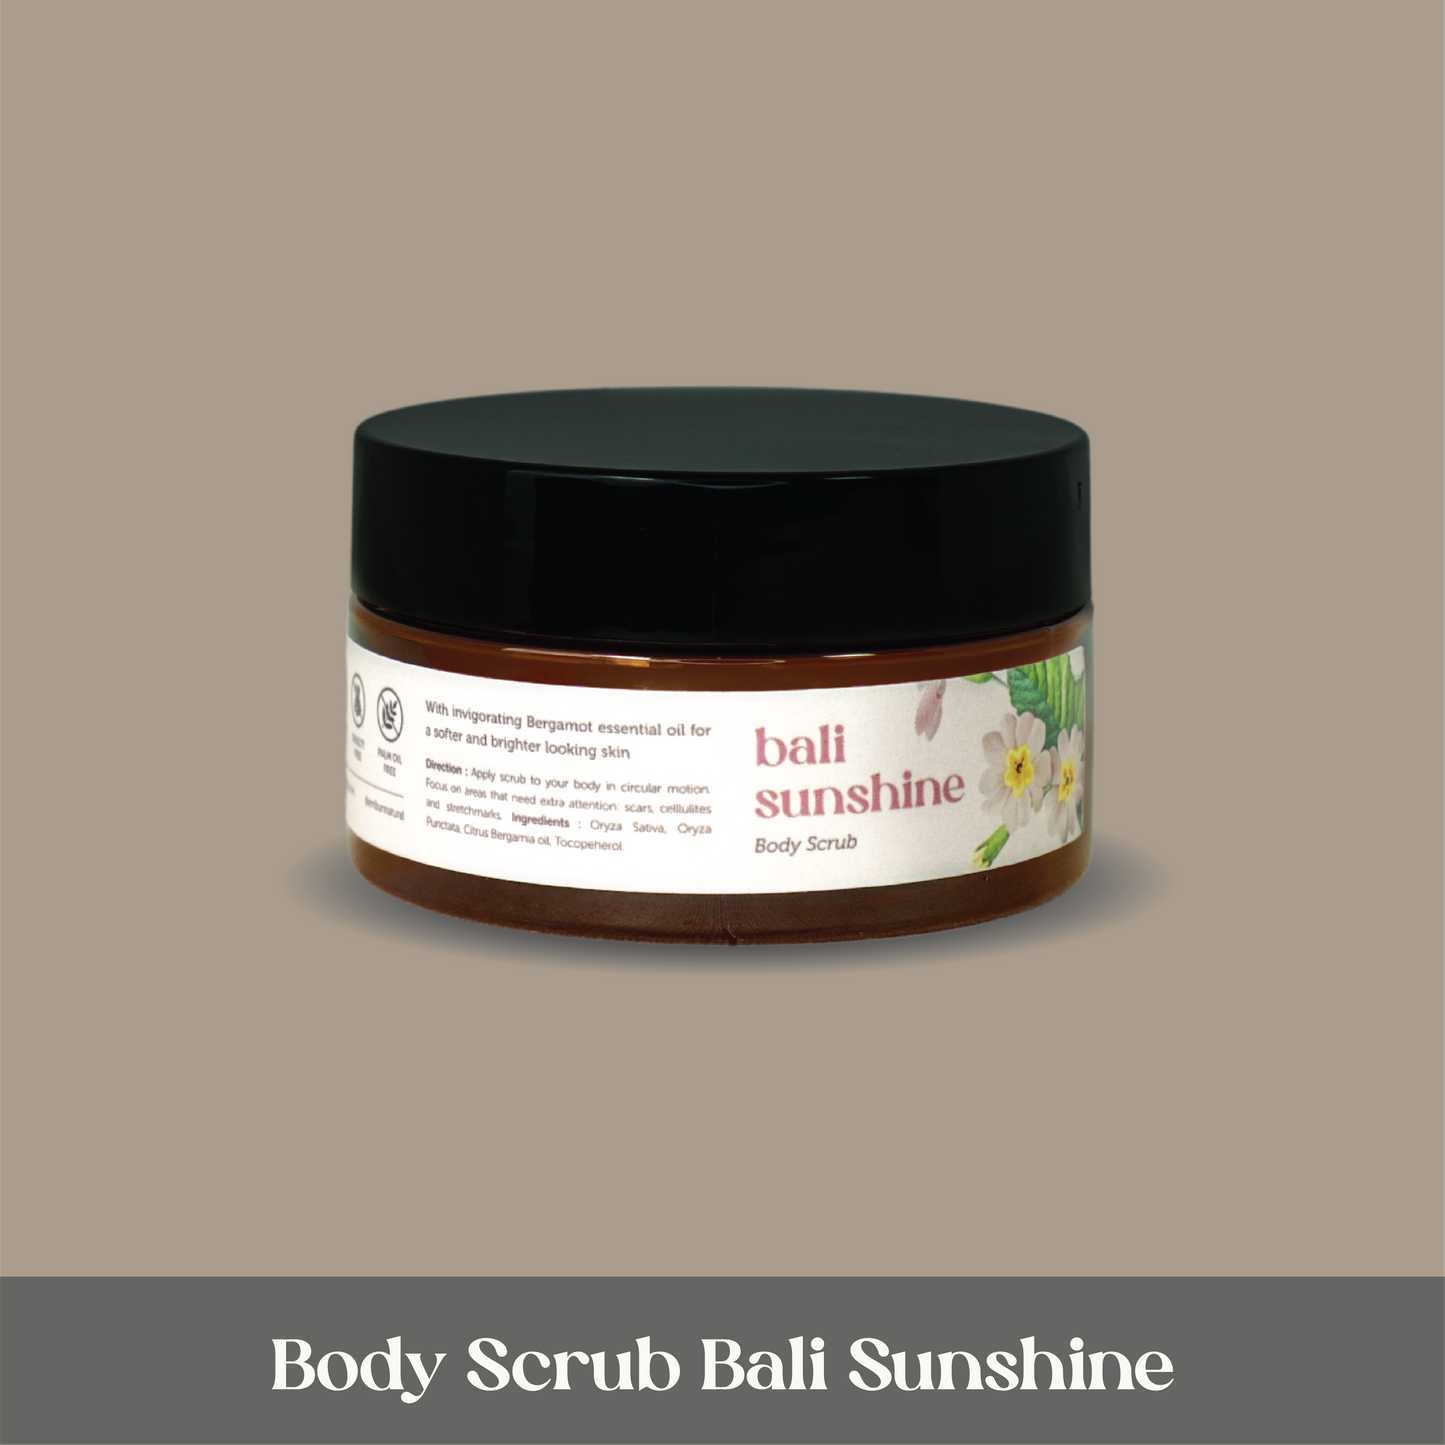 Body Scrub Bali Sunshine 100 gr